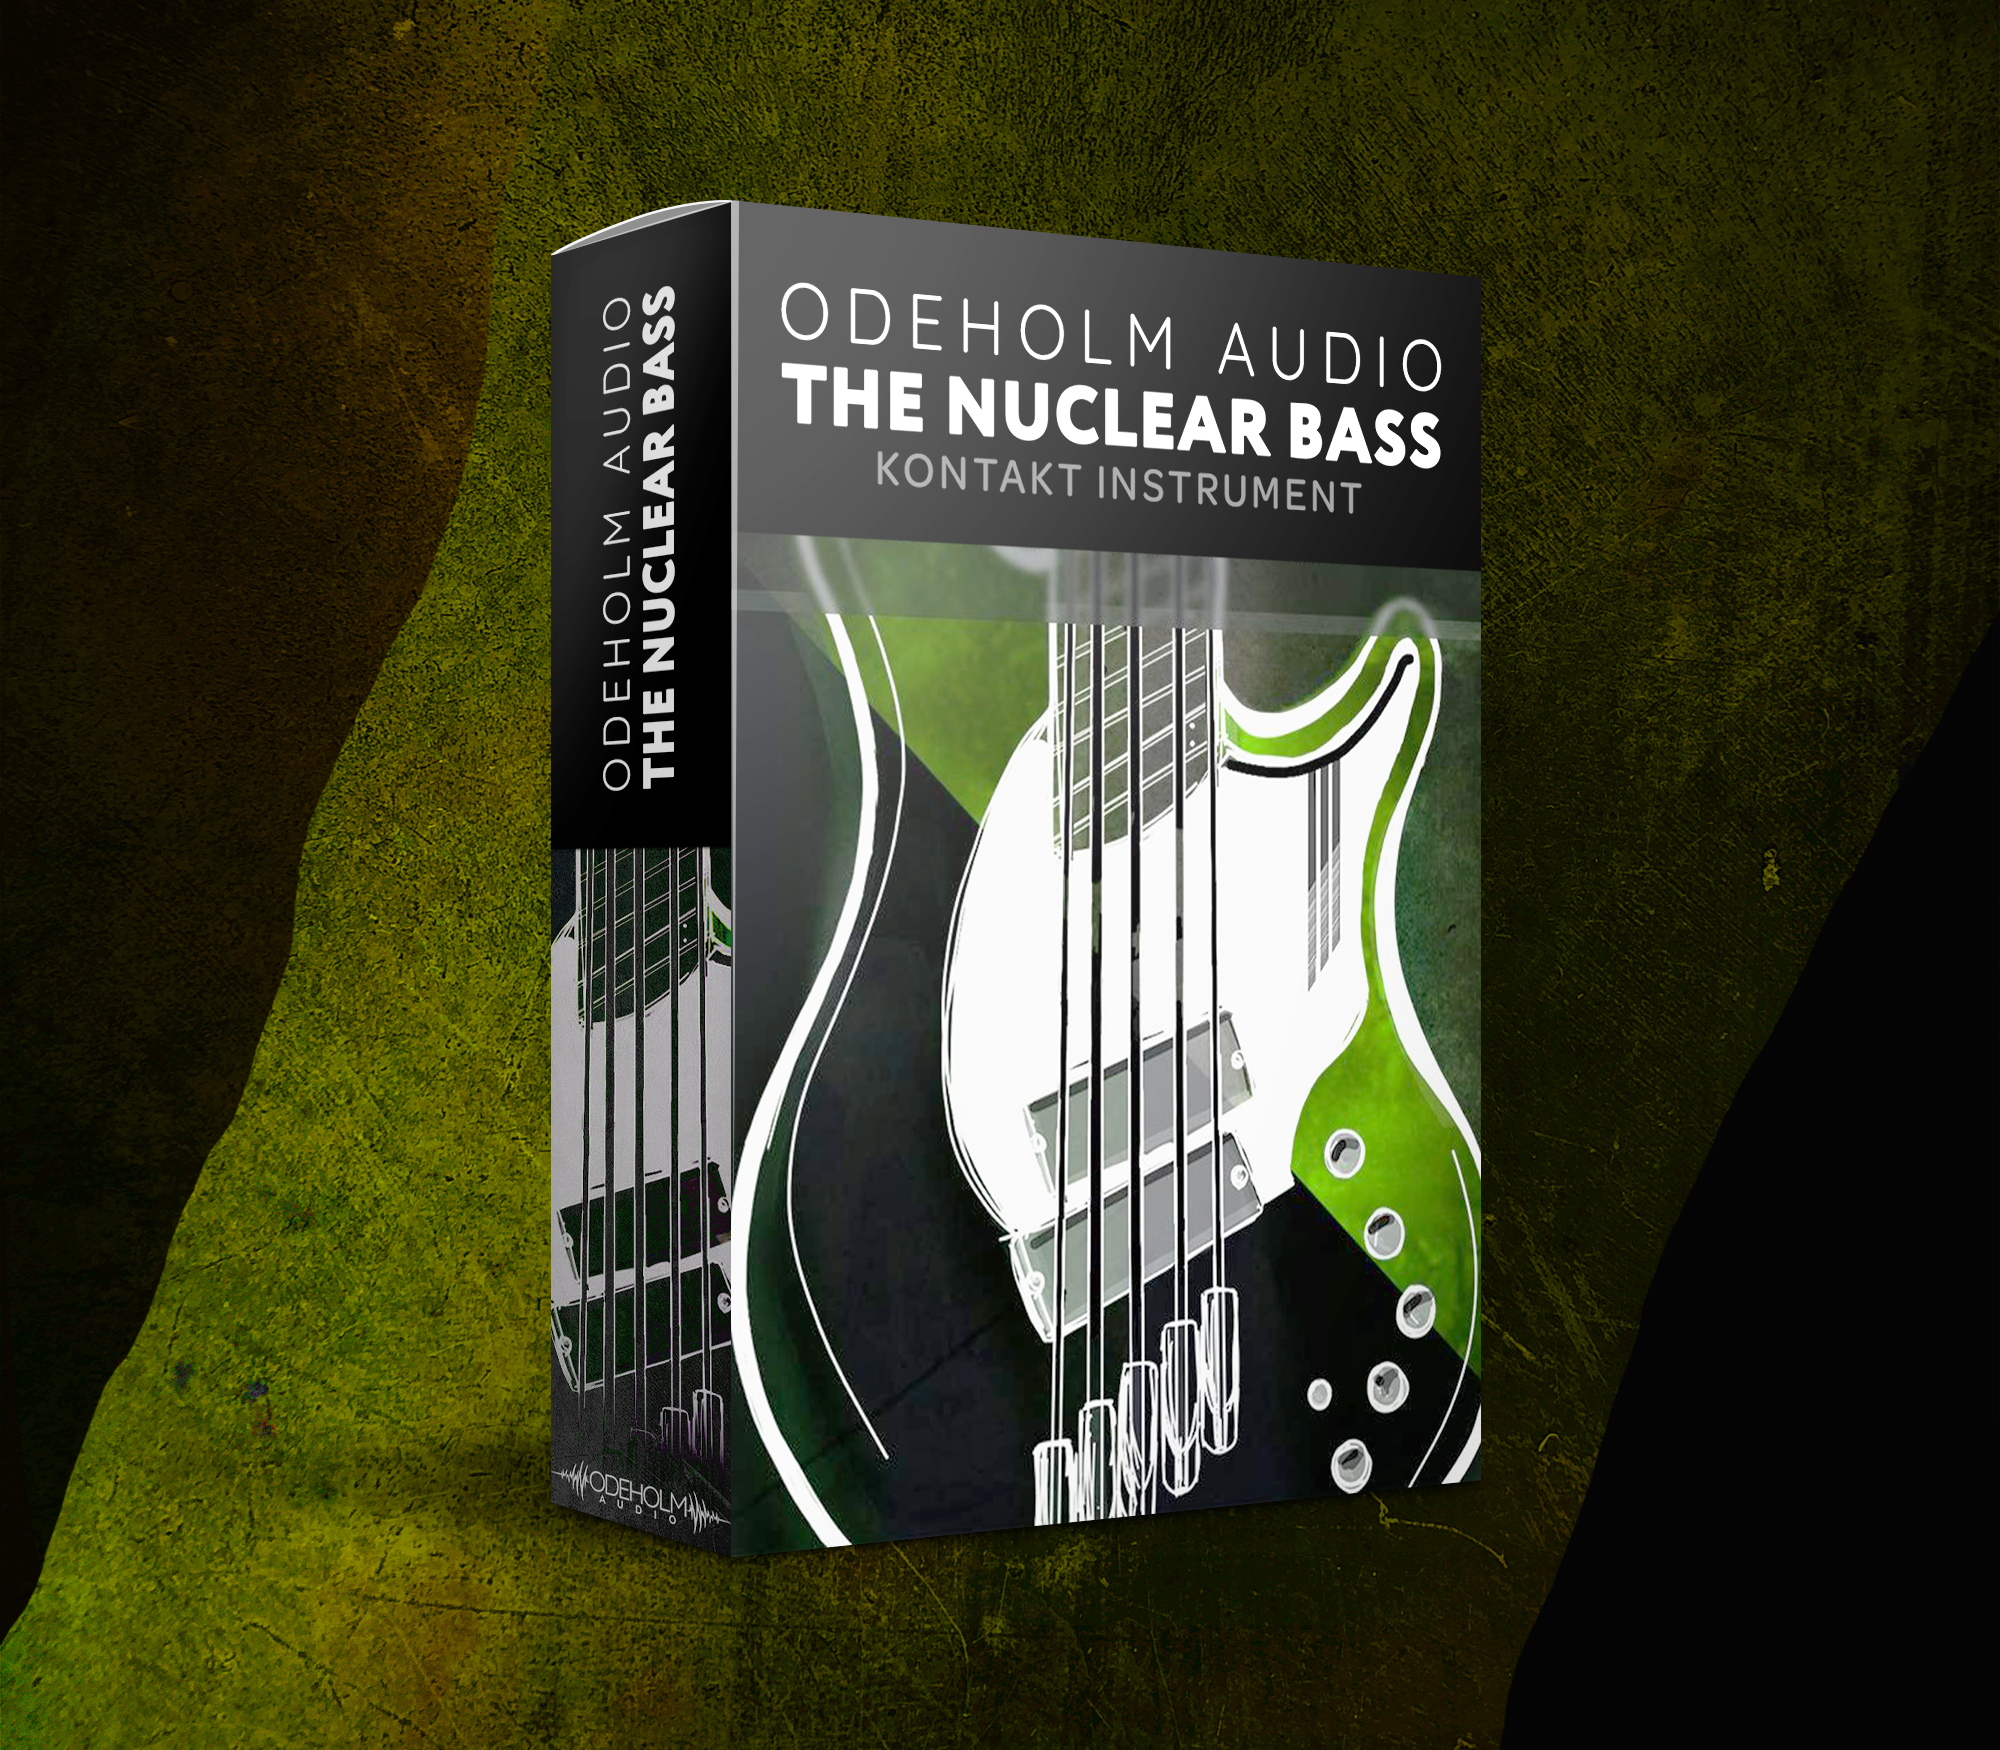 The Nuclear Bass